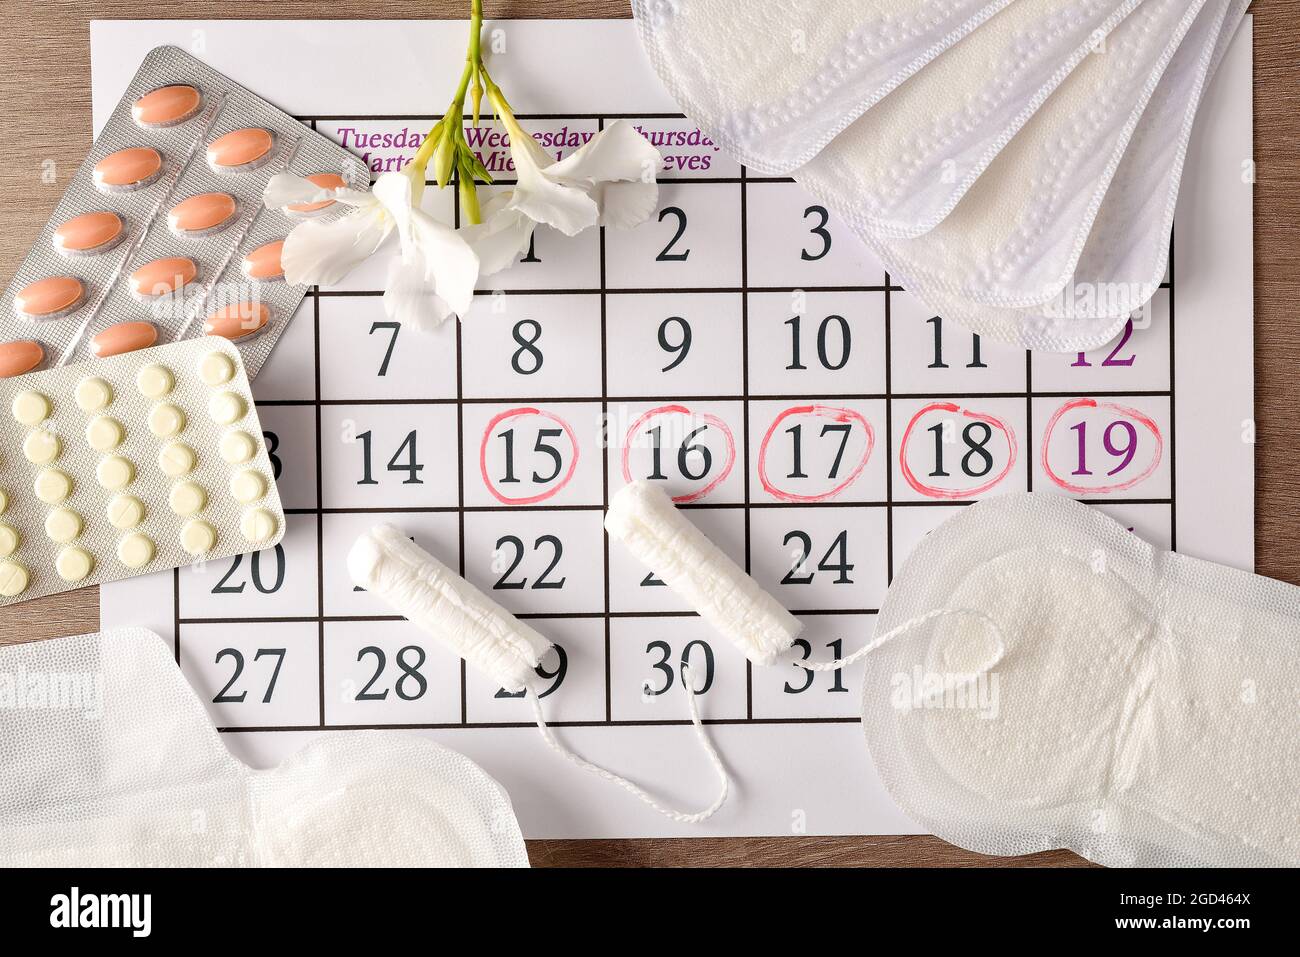 Calendario mestruale con giorni critici marcati e vari prodotti per l'igiene mestruale e pillole intorno su tavola di legno. Vista dall'alto. Foto Stock